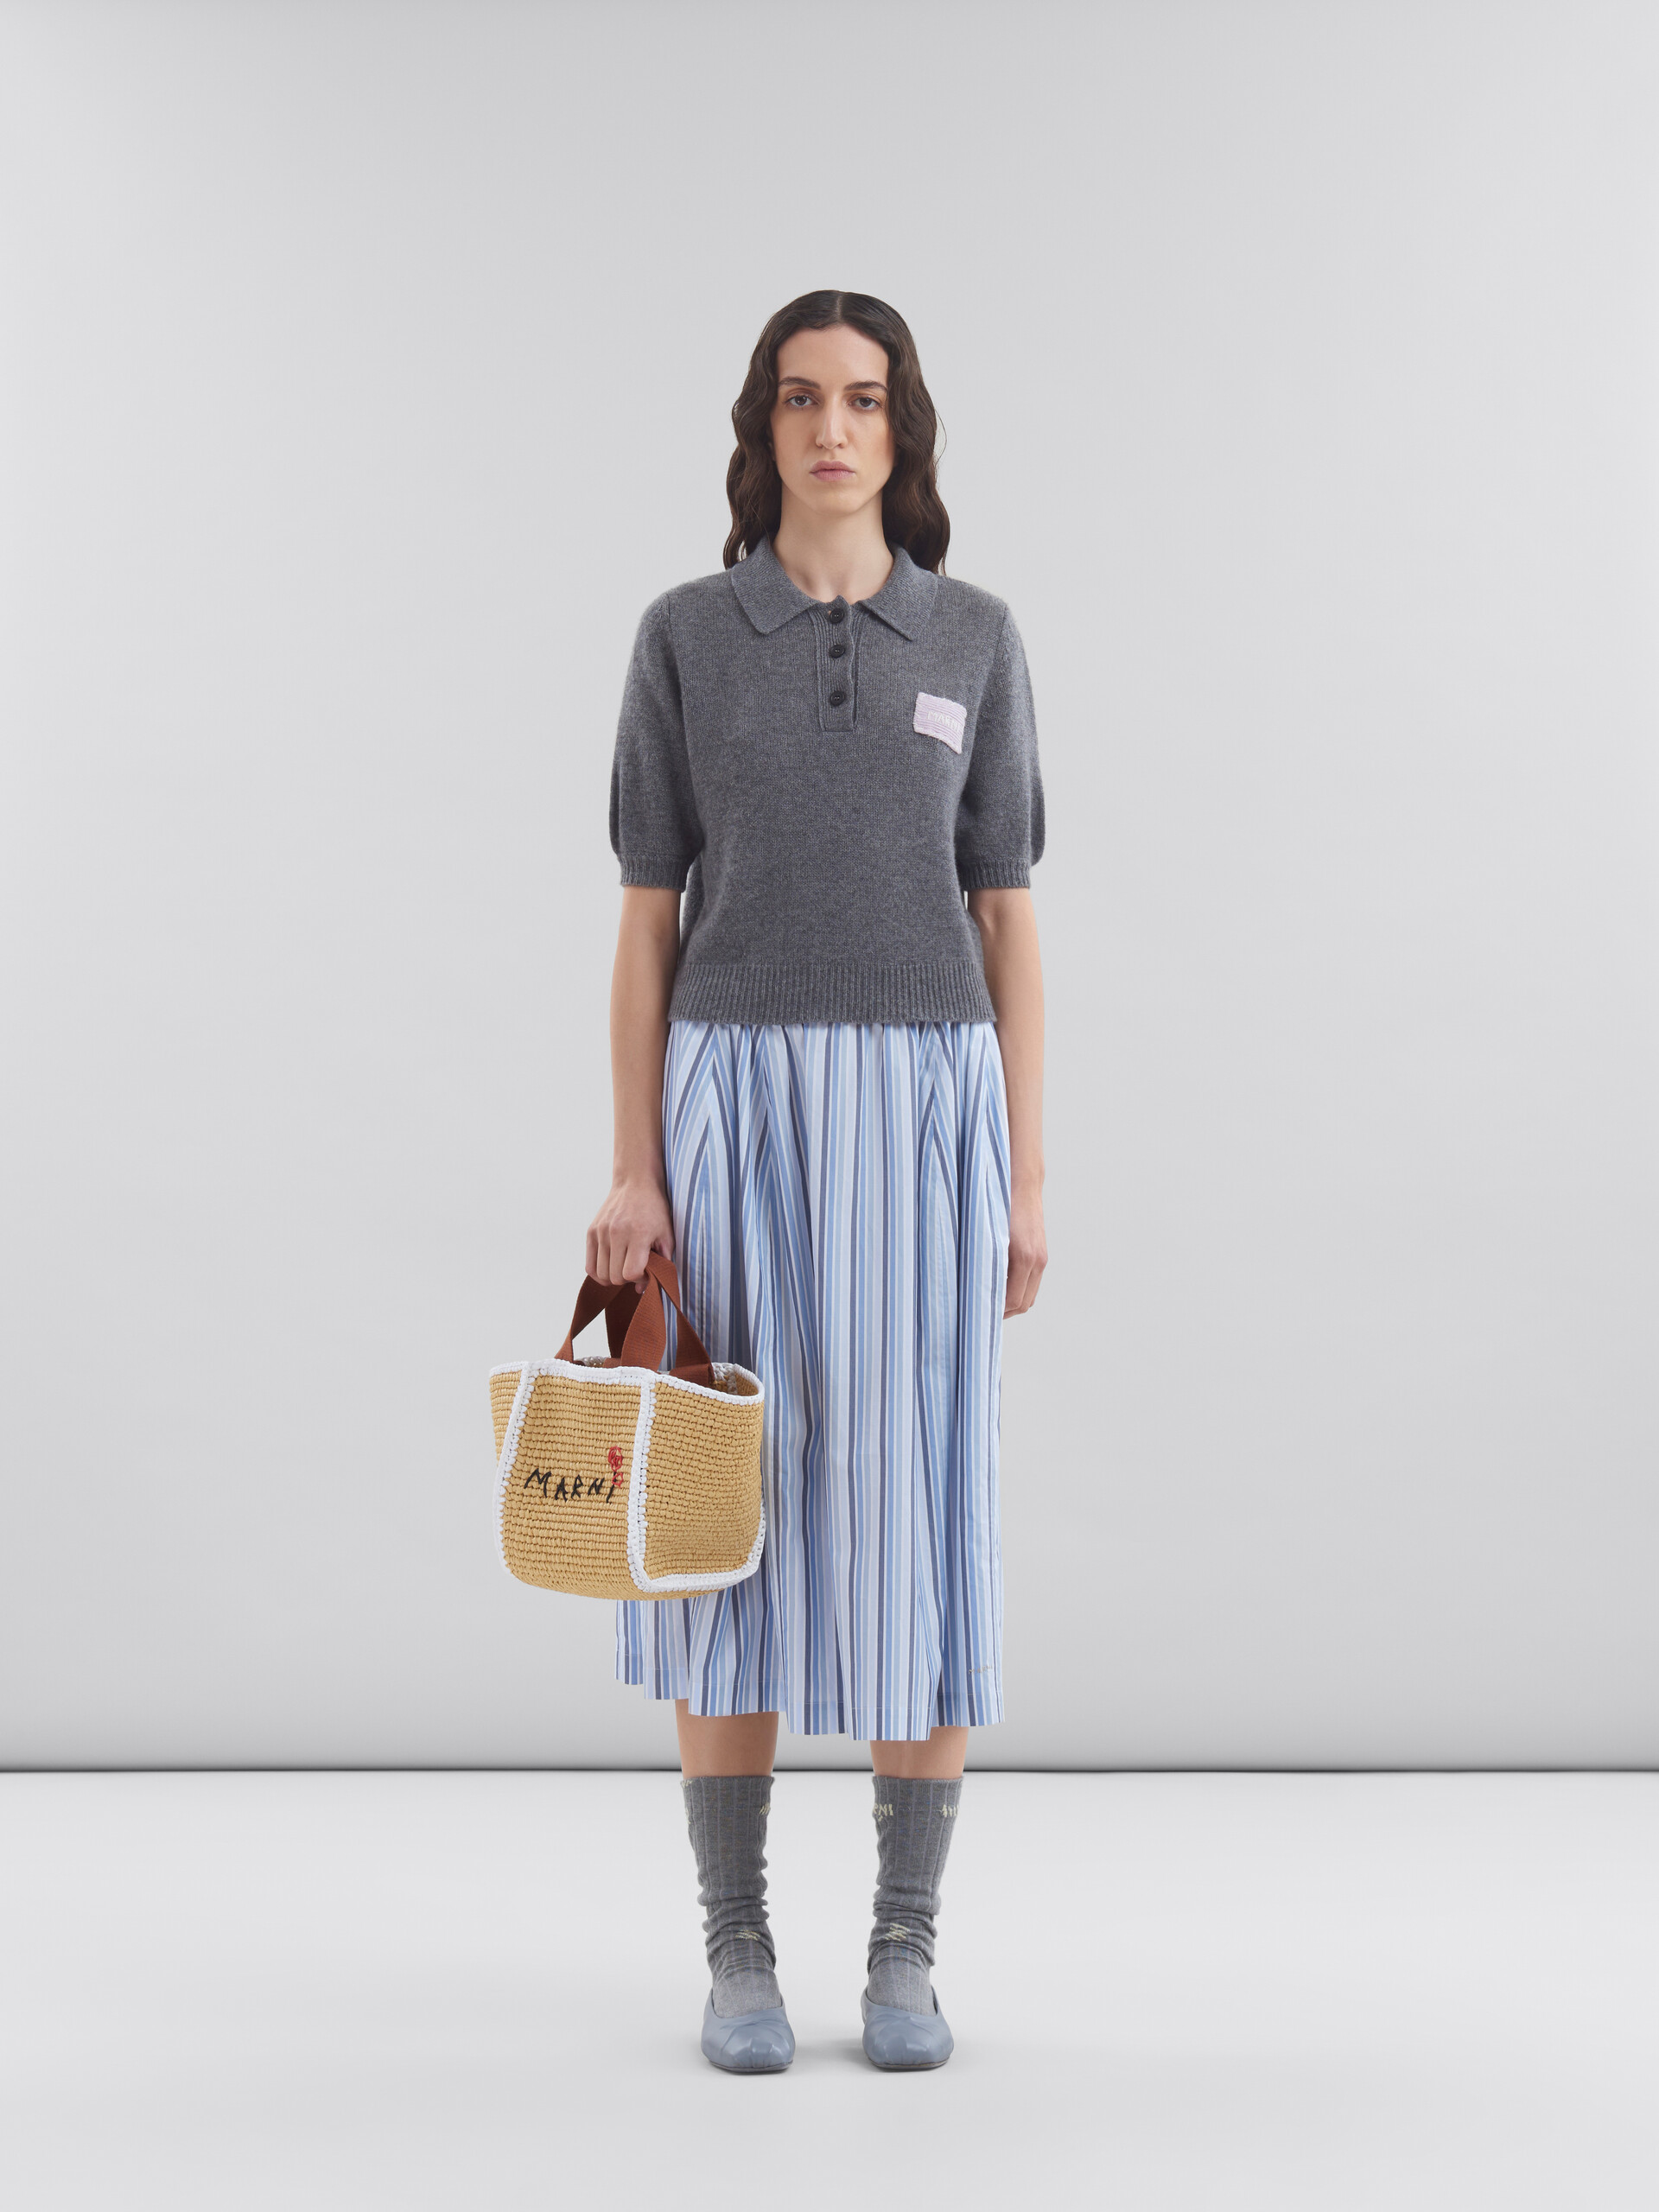 Sillo shopping bag piccola in maglia macramé effetto rafia naturale - Borse shopping - Image 2